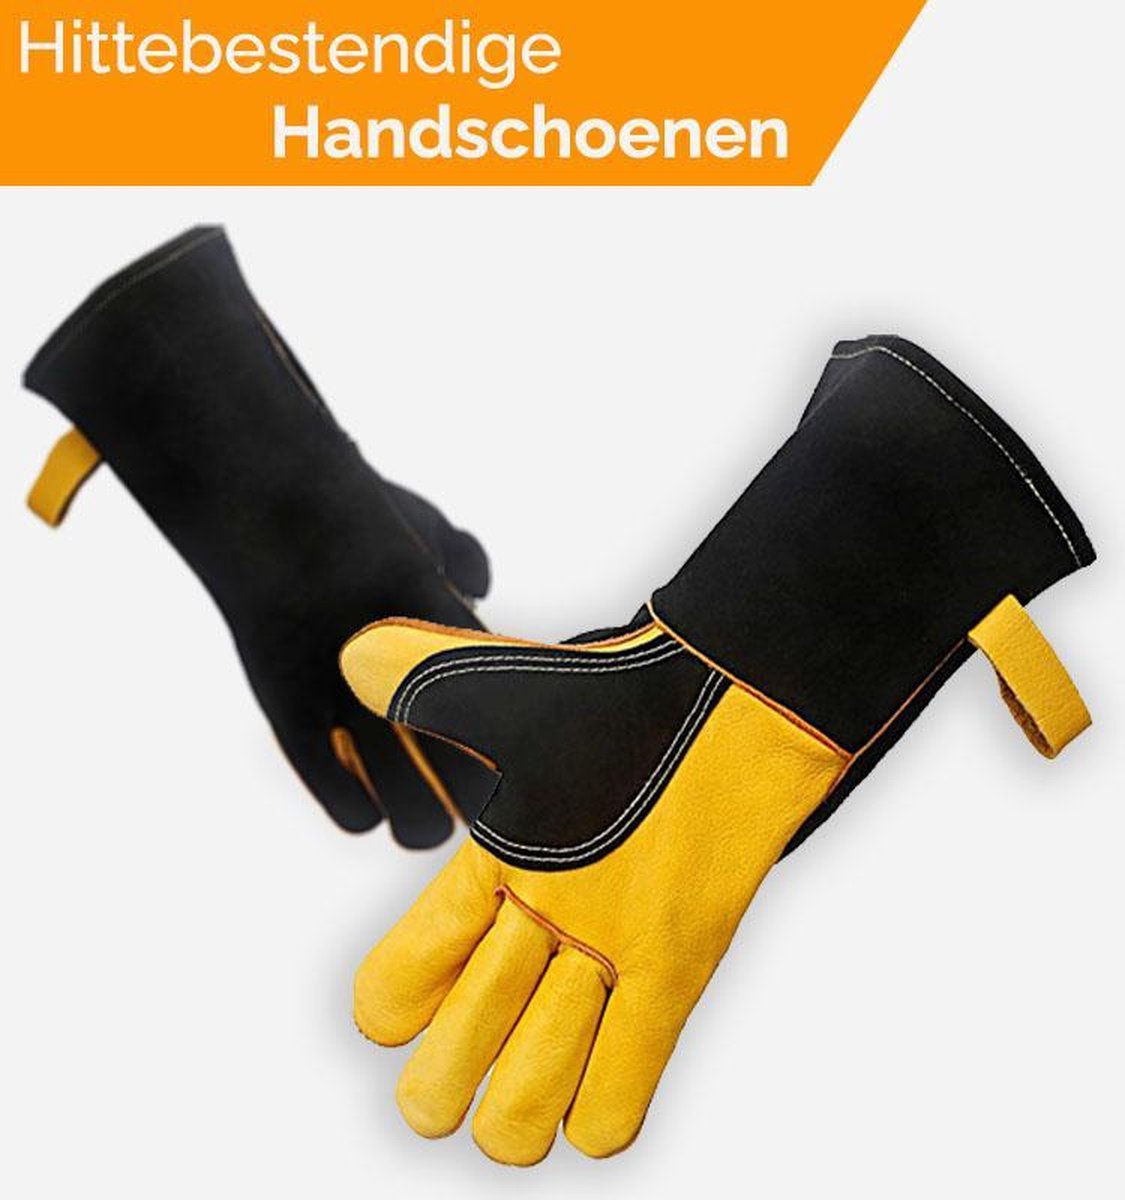 BBQ handschoenen - Hittebestendige Handschoen - BBQ Handschoenen Leer - Ovenhandschoenen - BBQ Accessoires - 2 stuks (1 paar) - Merkloos